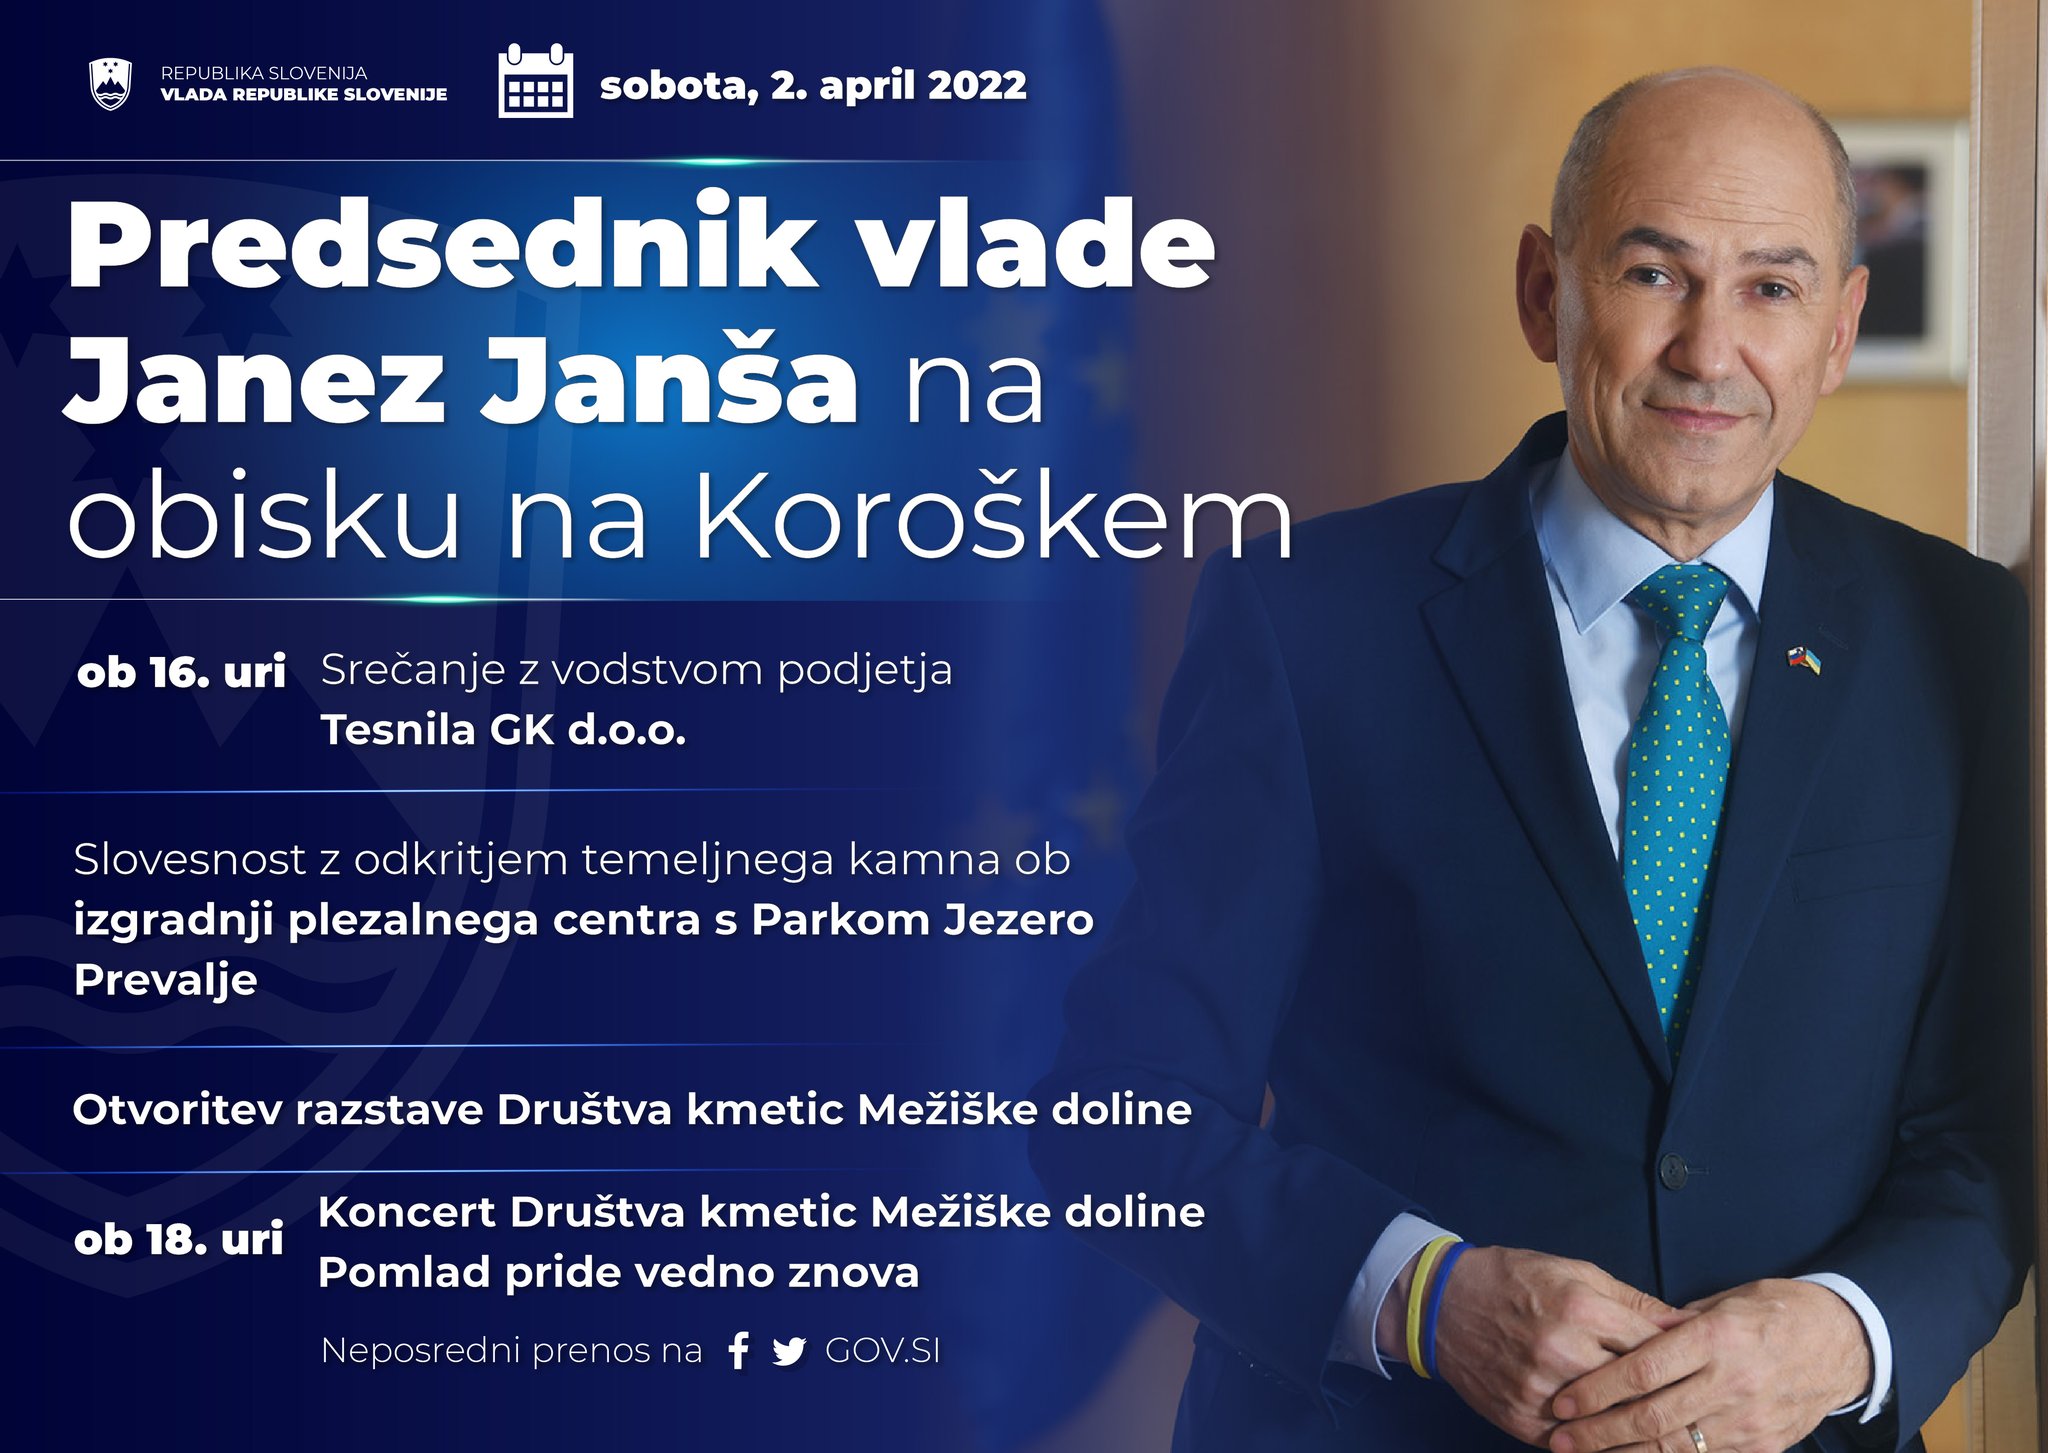 Vlada Republike Slovenije on X: "🇸🇮 @JJansaSDS bo danes obiskal Koroško,  kjer se bo srečal z vodstvom podjetja Tesnila GK, sodeloval pri odkritju  temeljnega kamna v Prevaljah, se udeležil razstave Društva kmetic